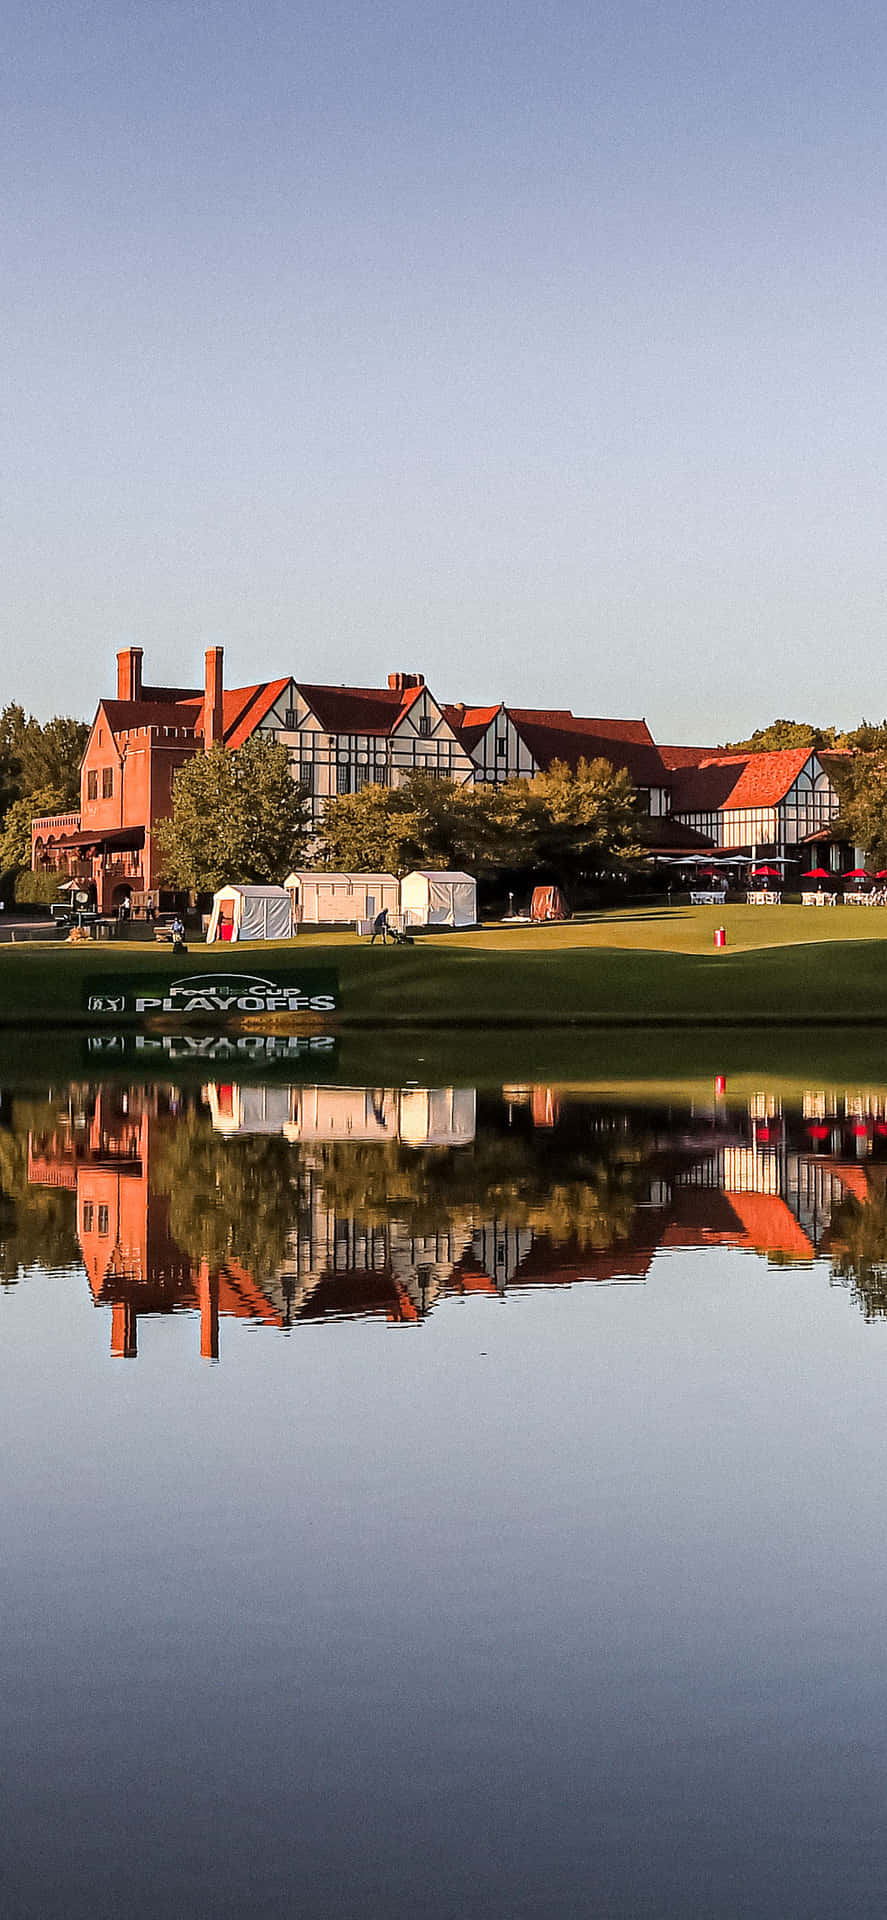 Tee ud på én af de mest ikoniske golfbaner i verden, Augusta National. Wallpaper